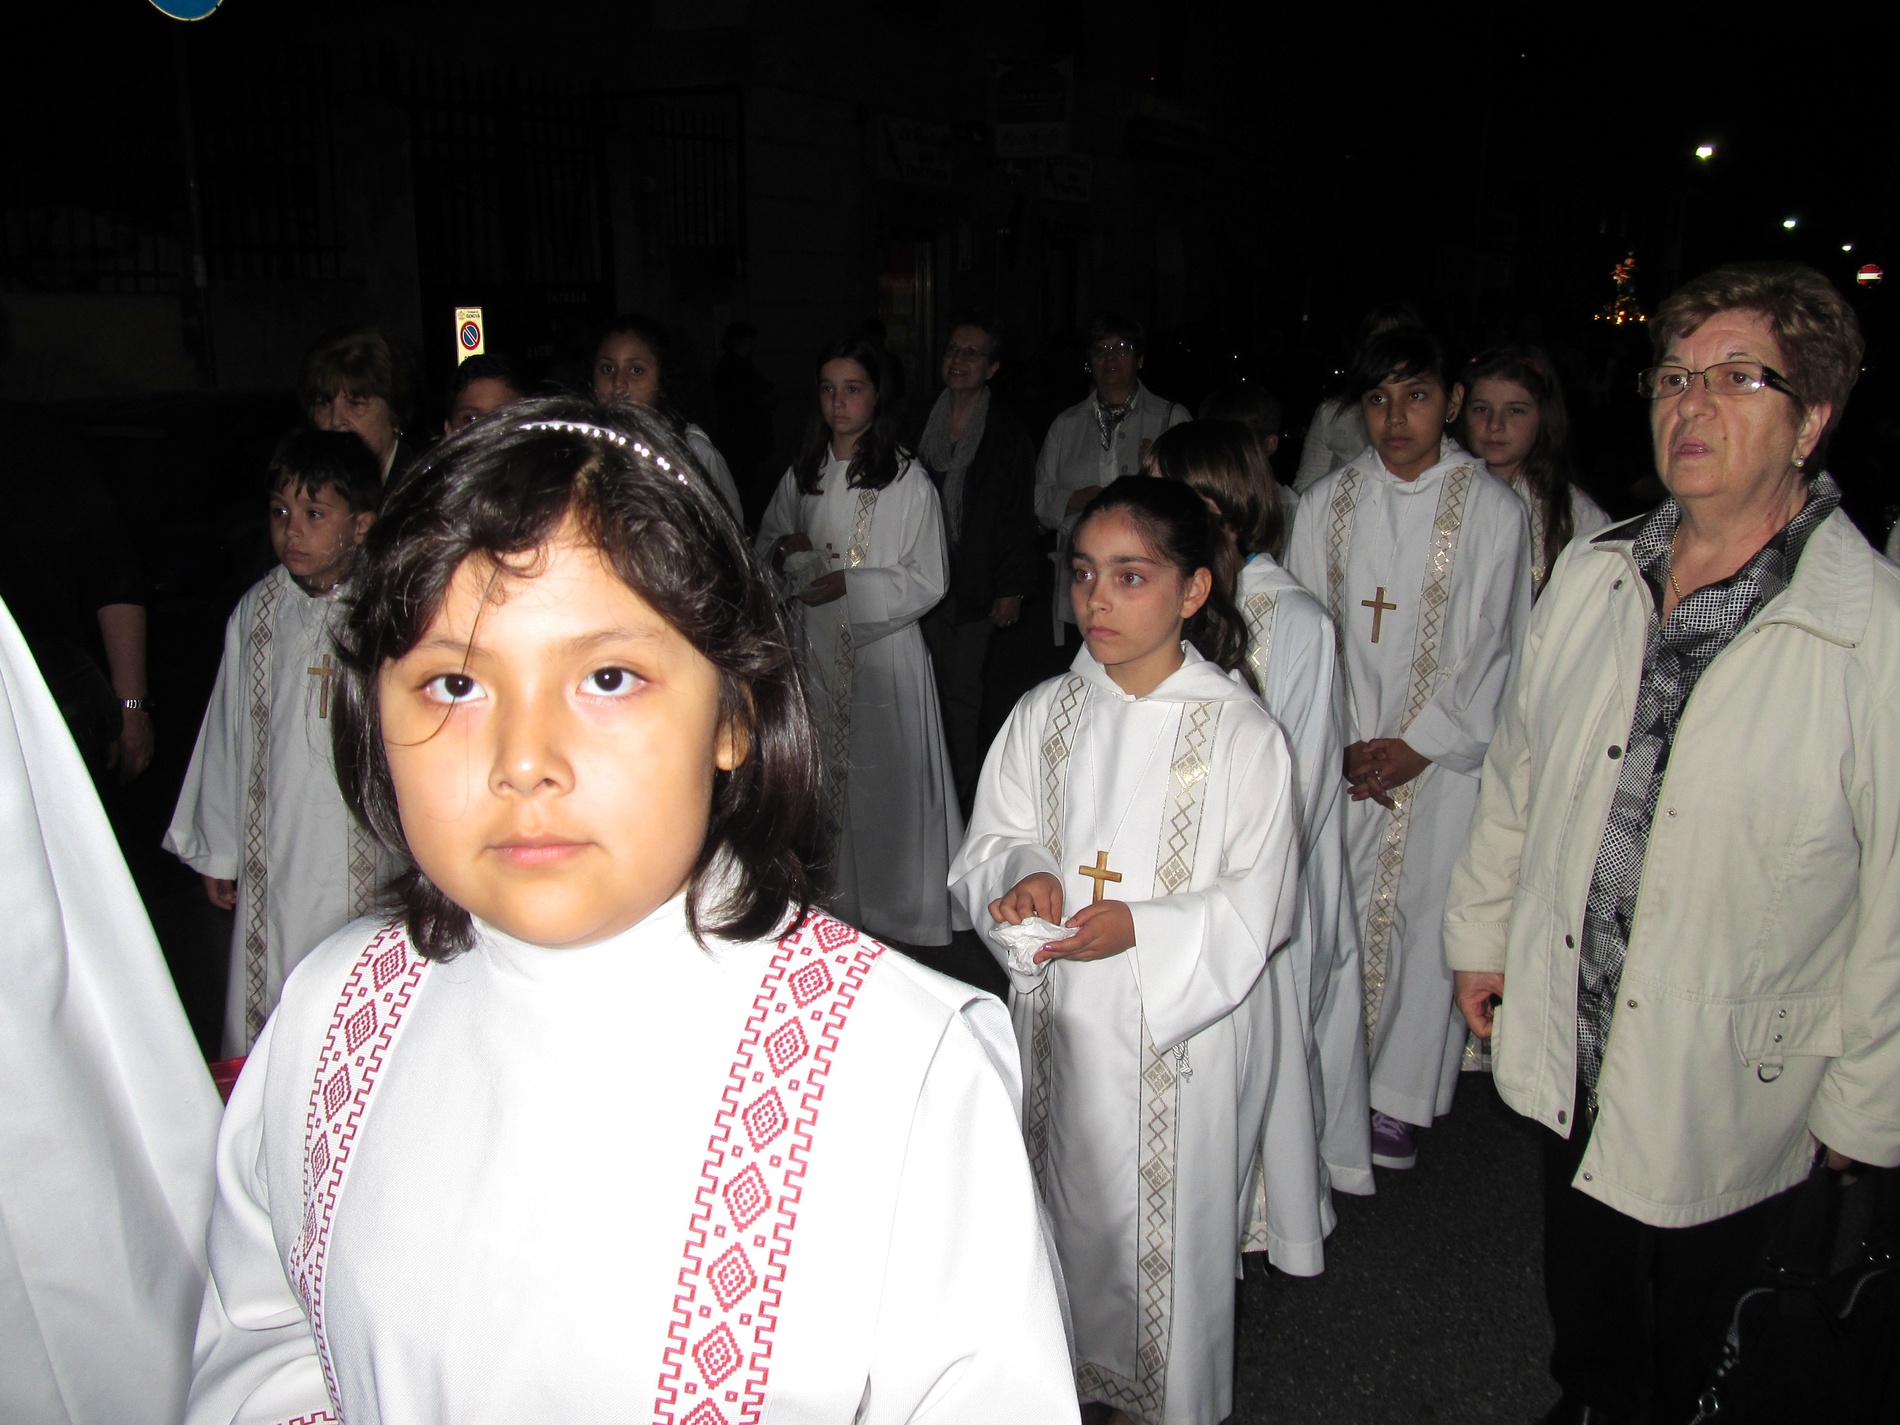 processione-madonna-2015-05-31-21-32-41